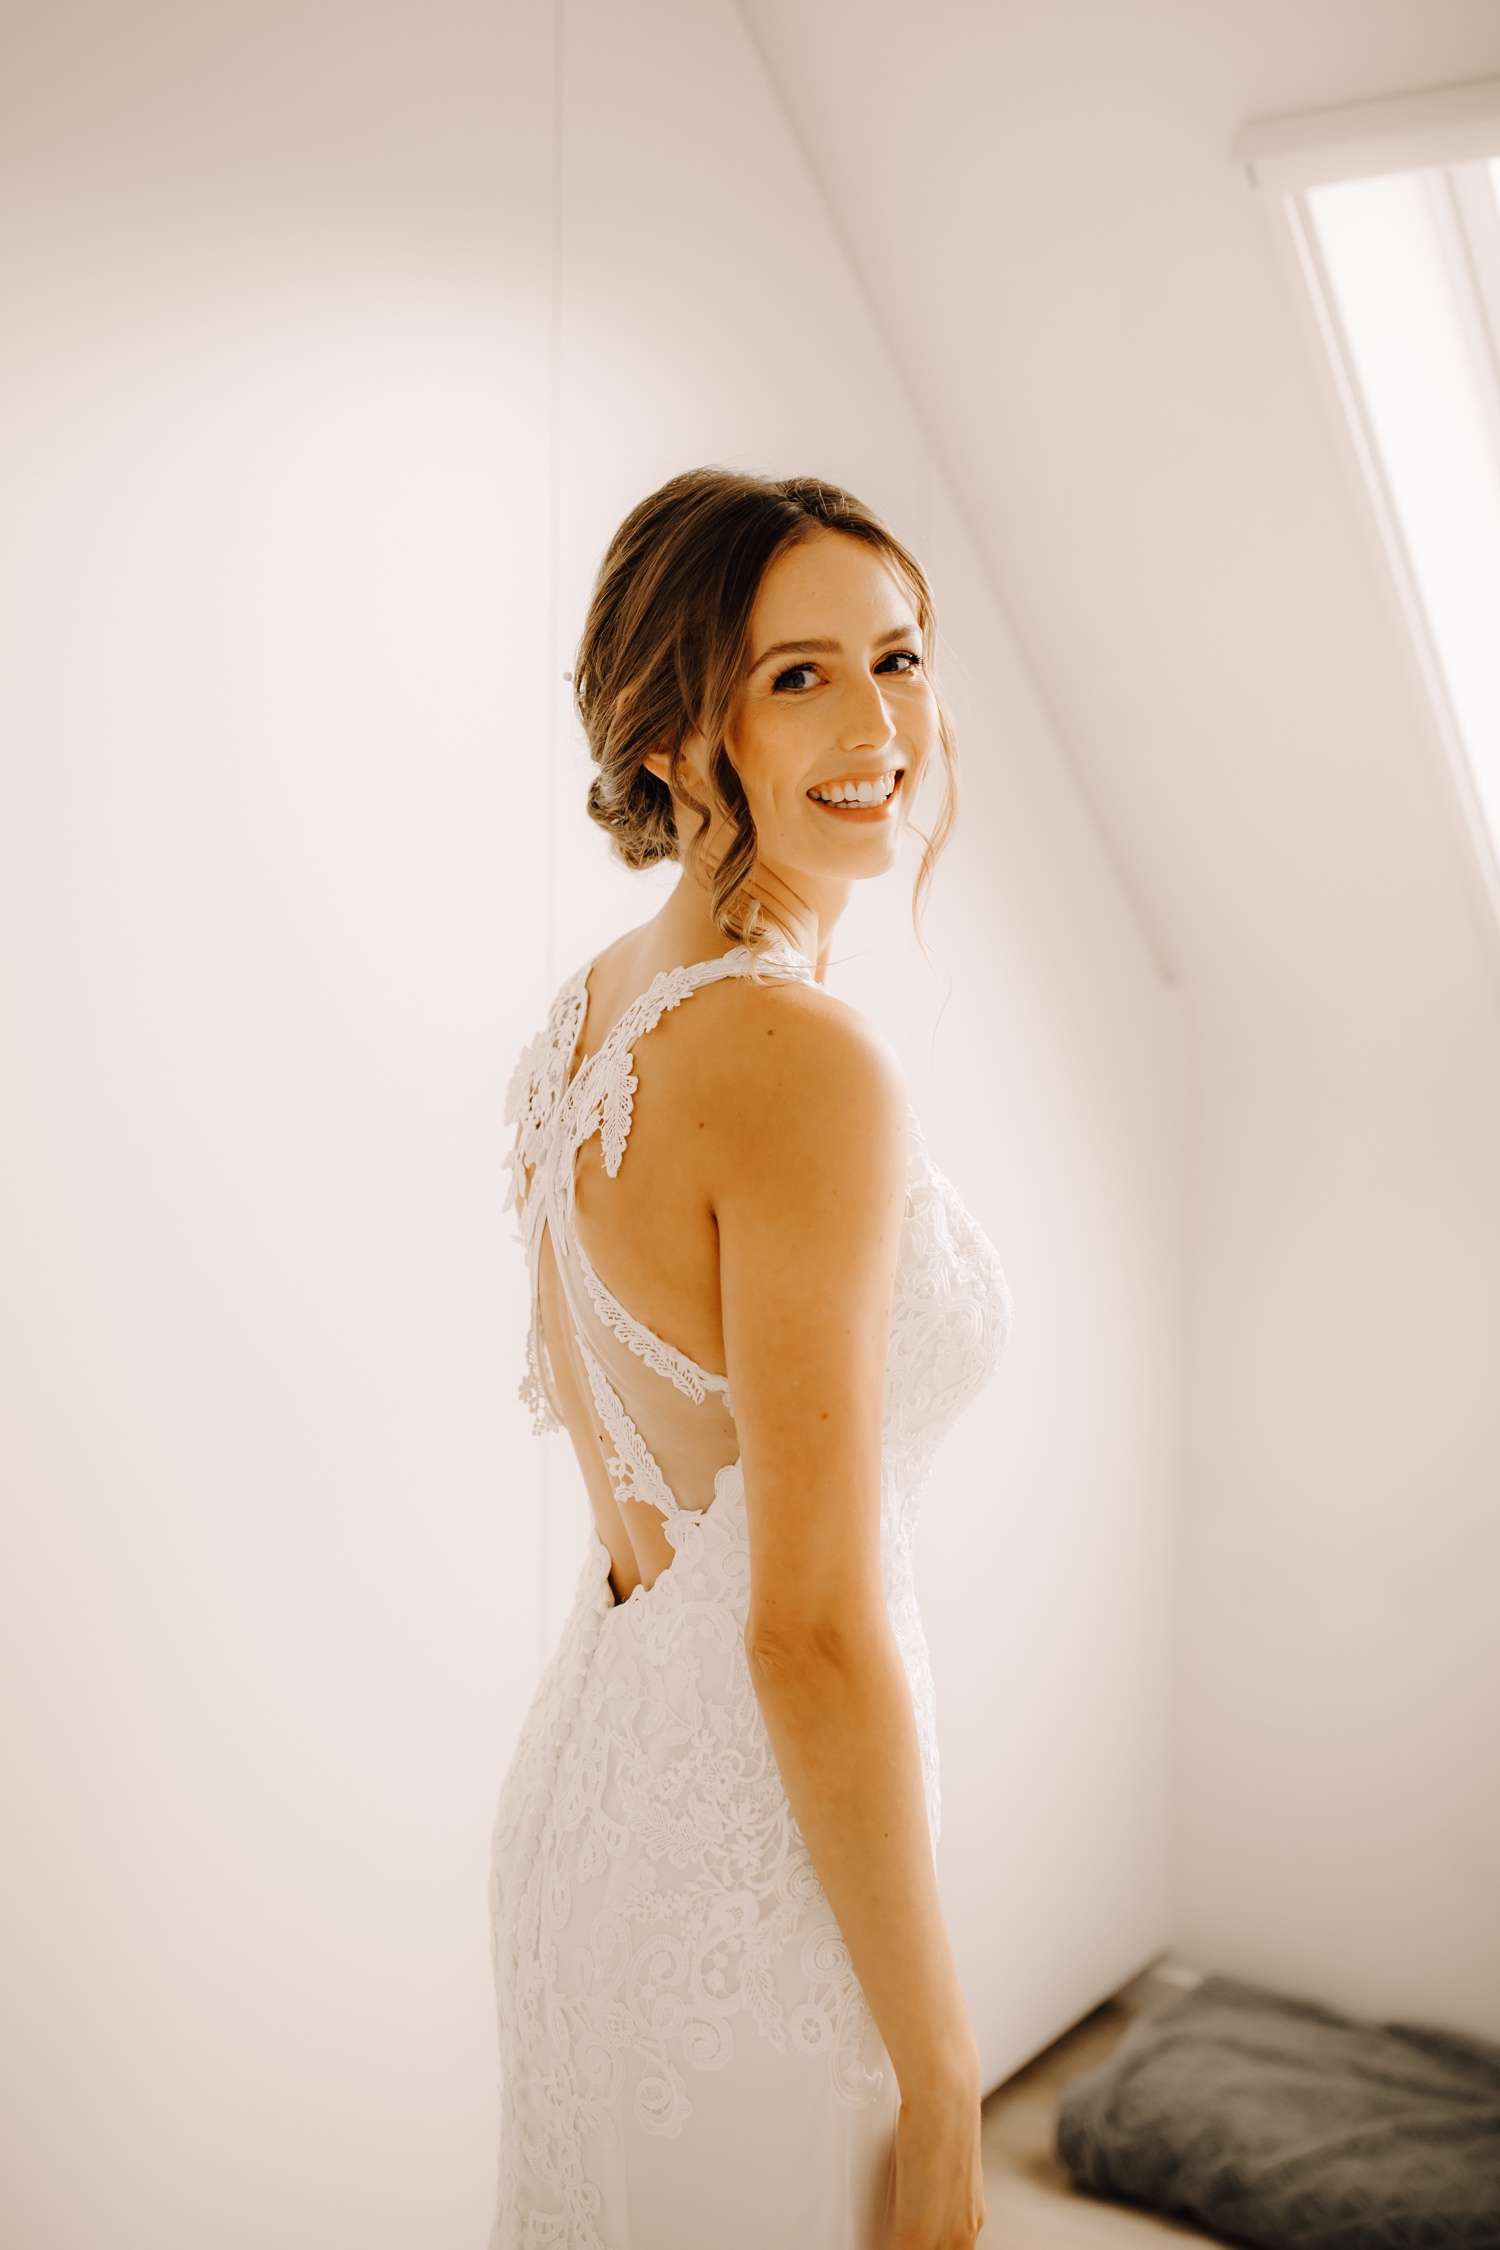 Huwelijksfotograaf limburg - bruid poseert in haar jurk